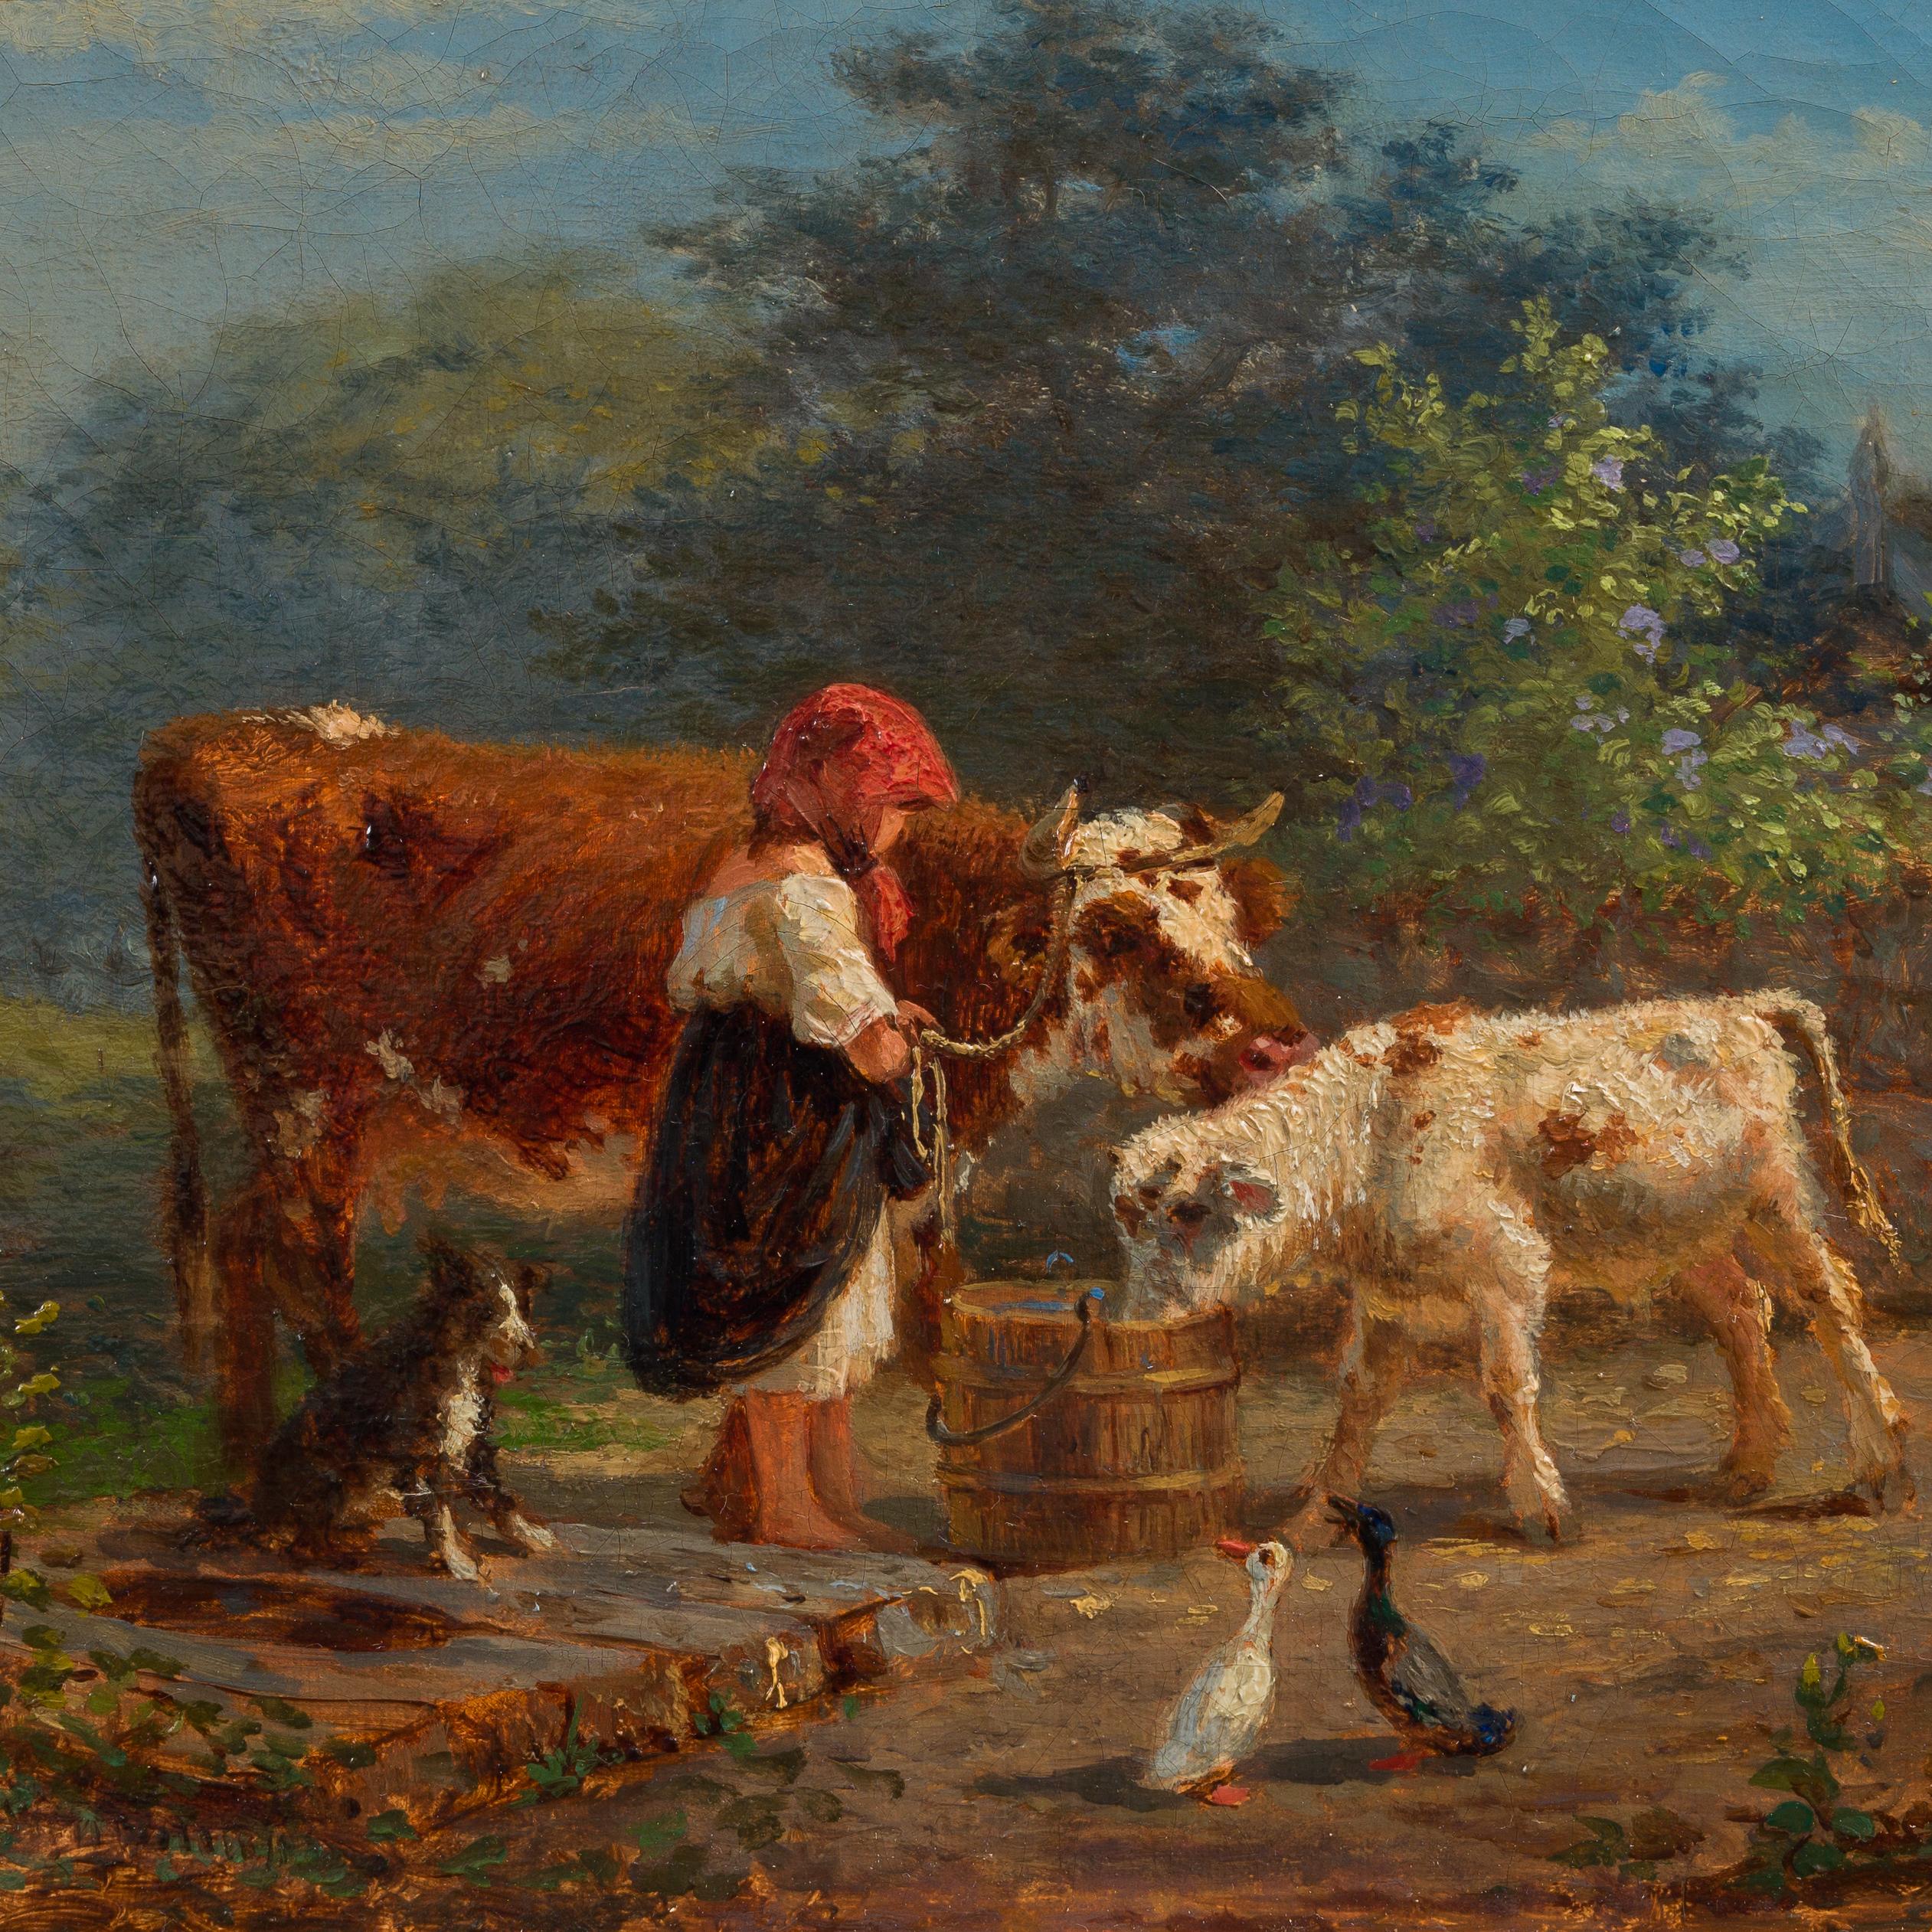 Cette peinture de Gustaf Brandelius, un artiste suédois du XIXe siècle, évoque la tranquillité pastorale et la vie rurale de l'époque. Brandelius n'était pas seulement peintre, il était aussi militaire, atteignant le grade de capitaine avant de